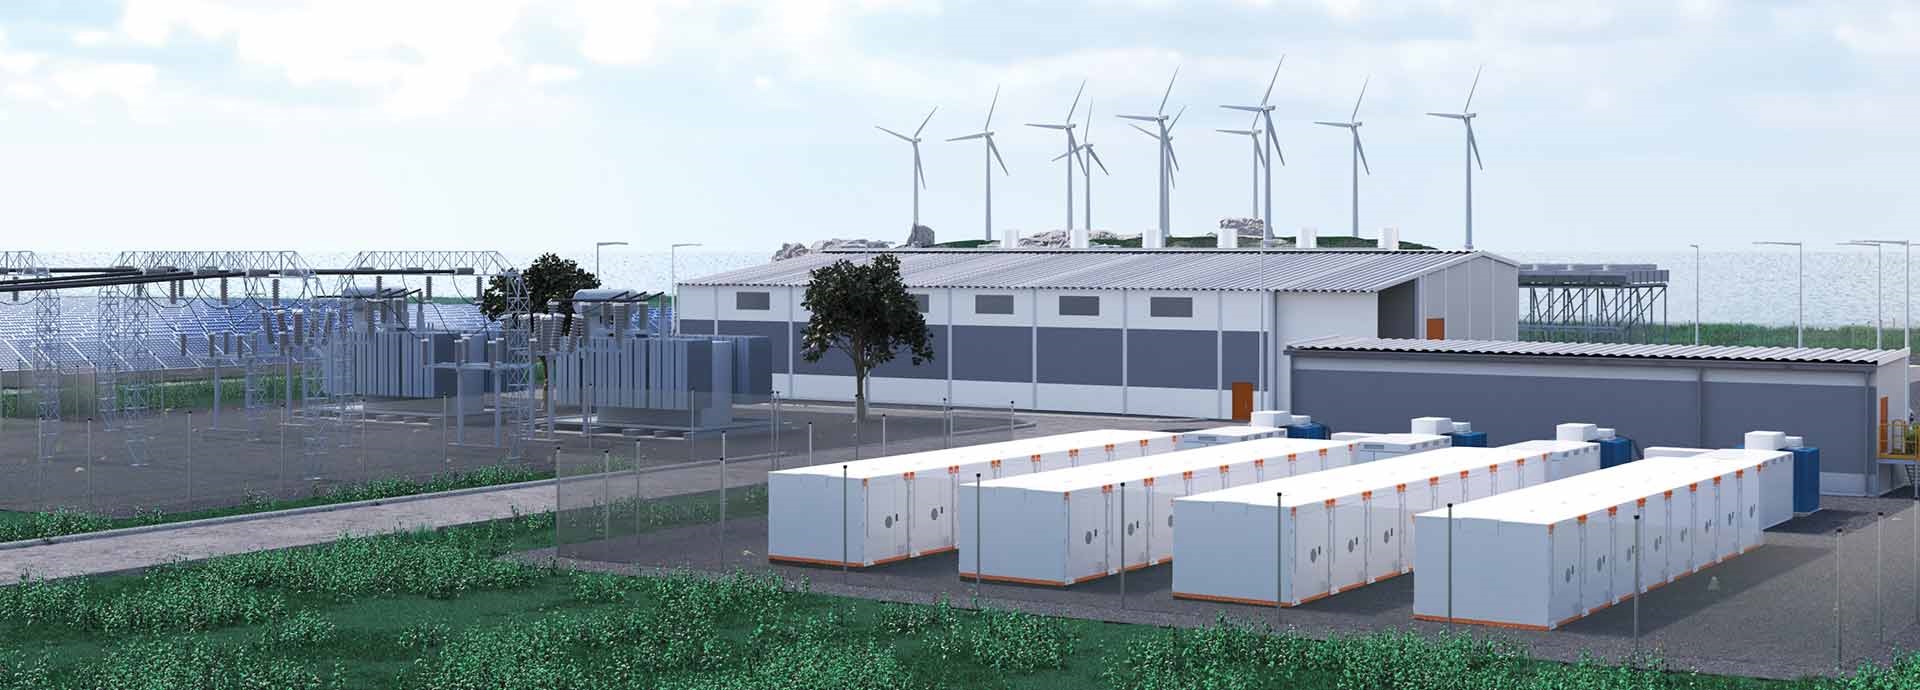 Wärtsilä hybrid power plant rendering